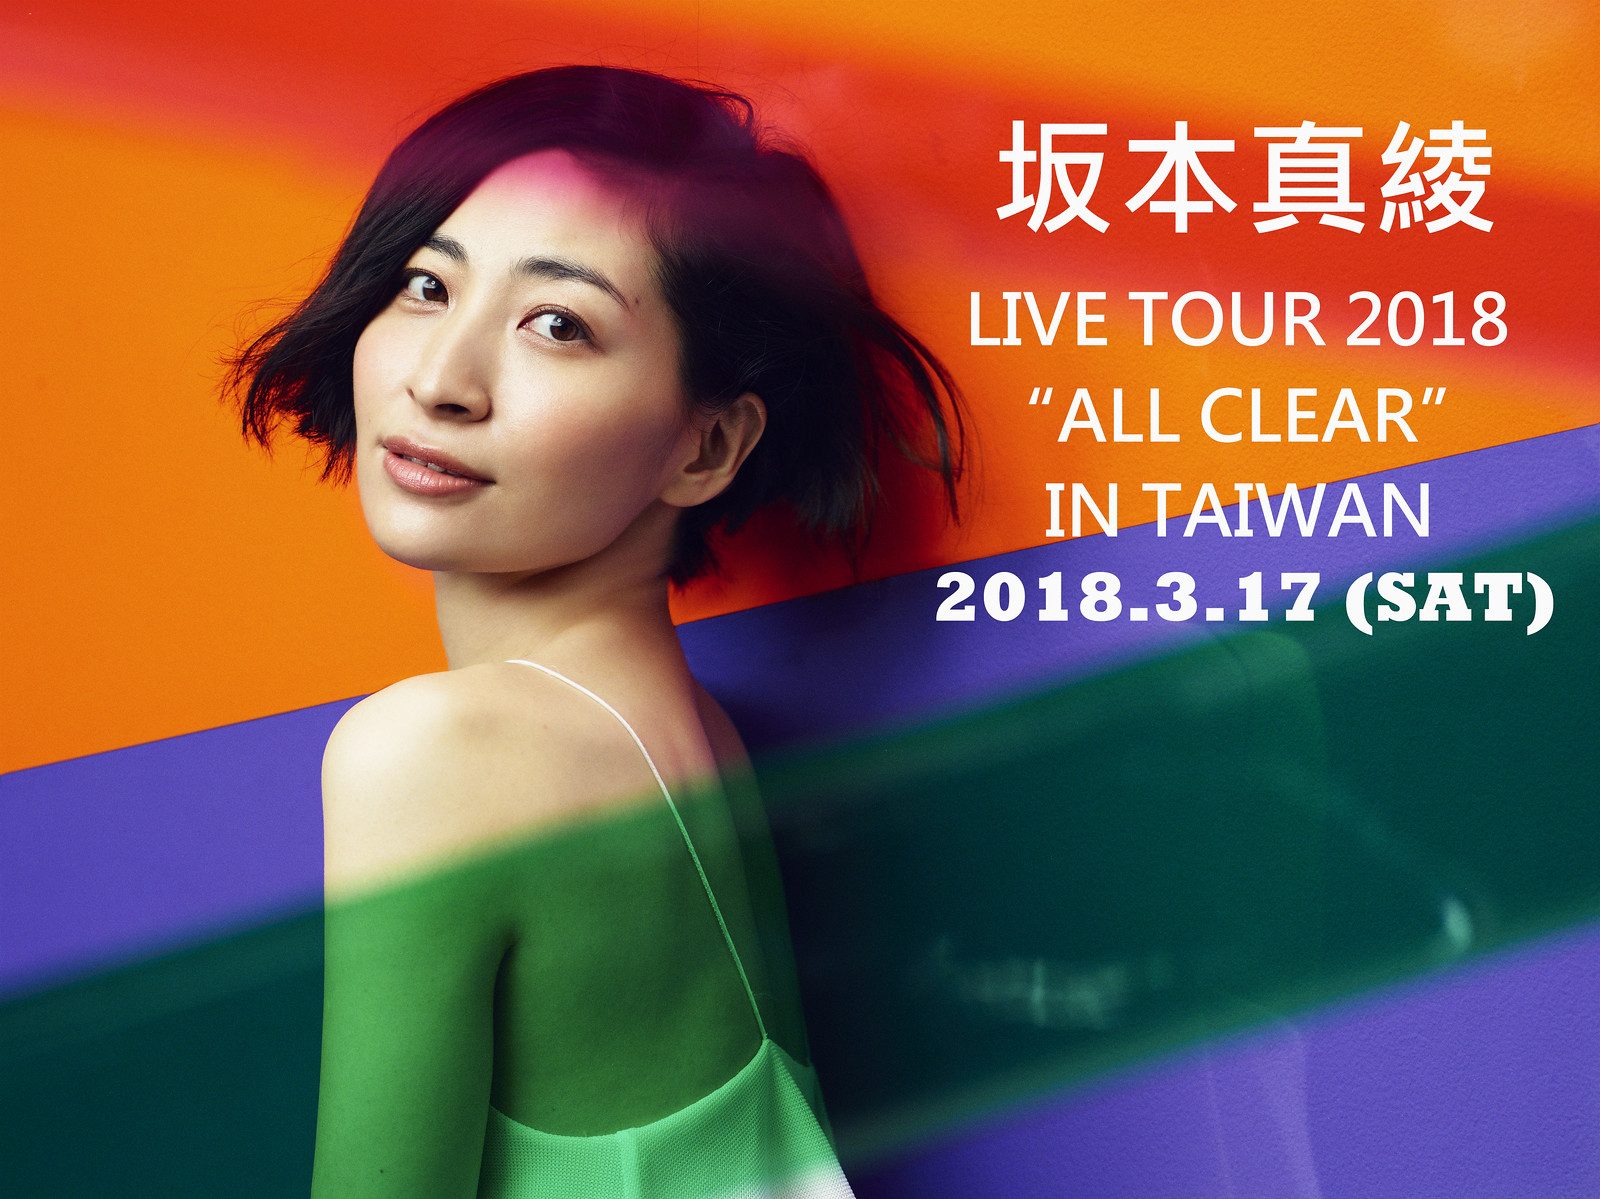 180111 -「坂本真綾」首場海外演唱會『LIVE TOUR 2018 “ALL CLEAR” in Taiwan』於3/17舉行、門票20日開賣！